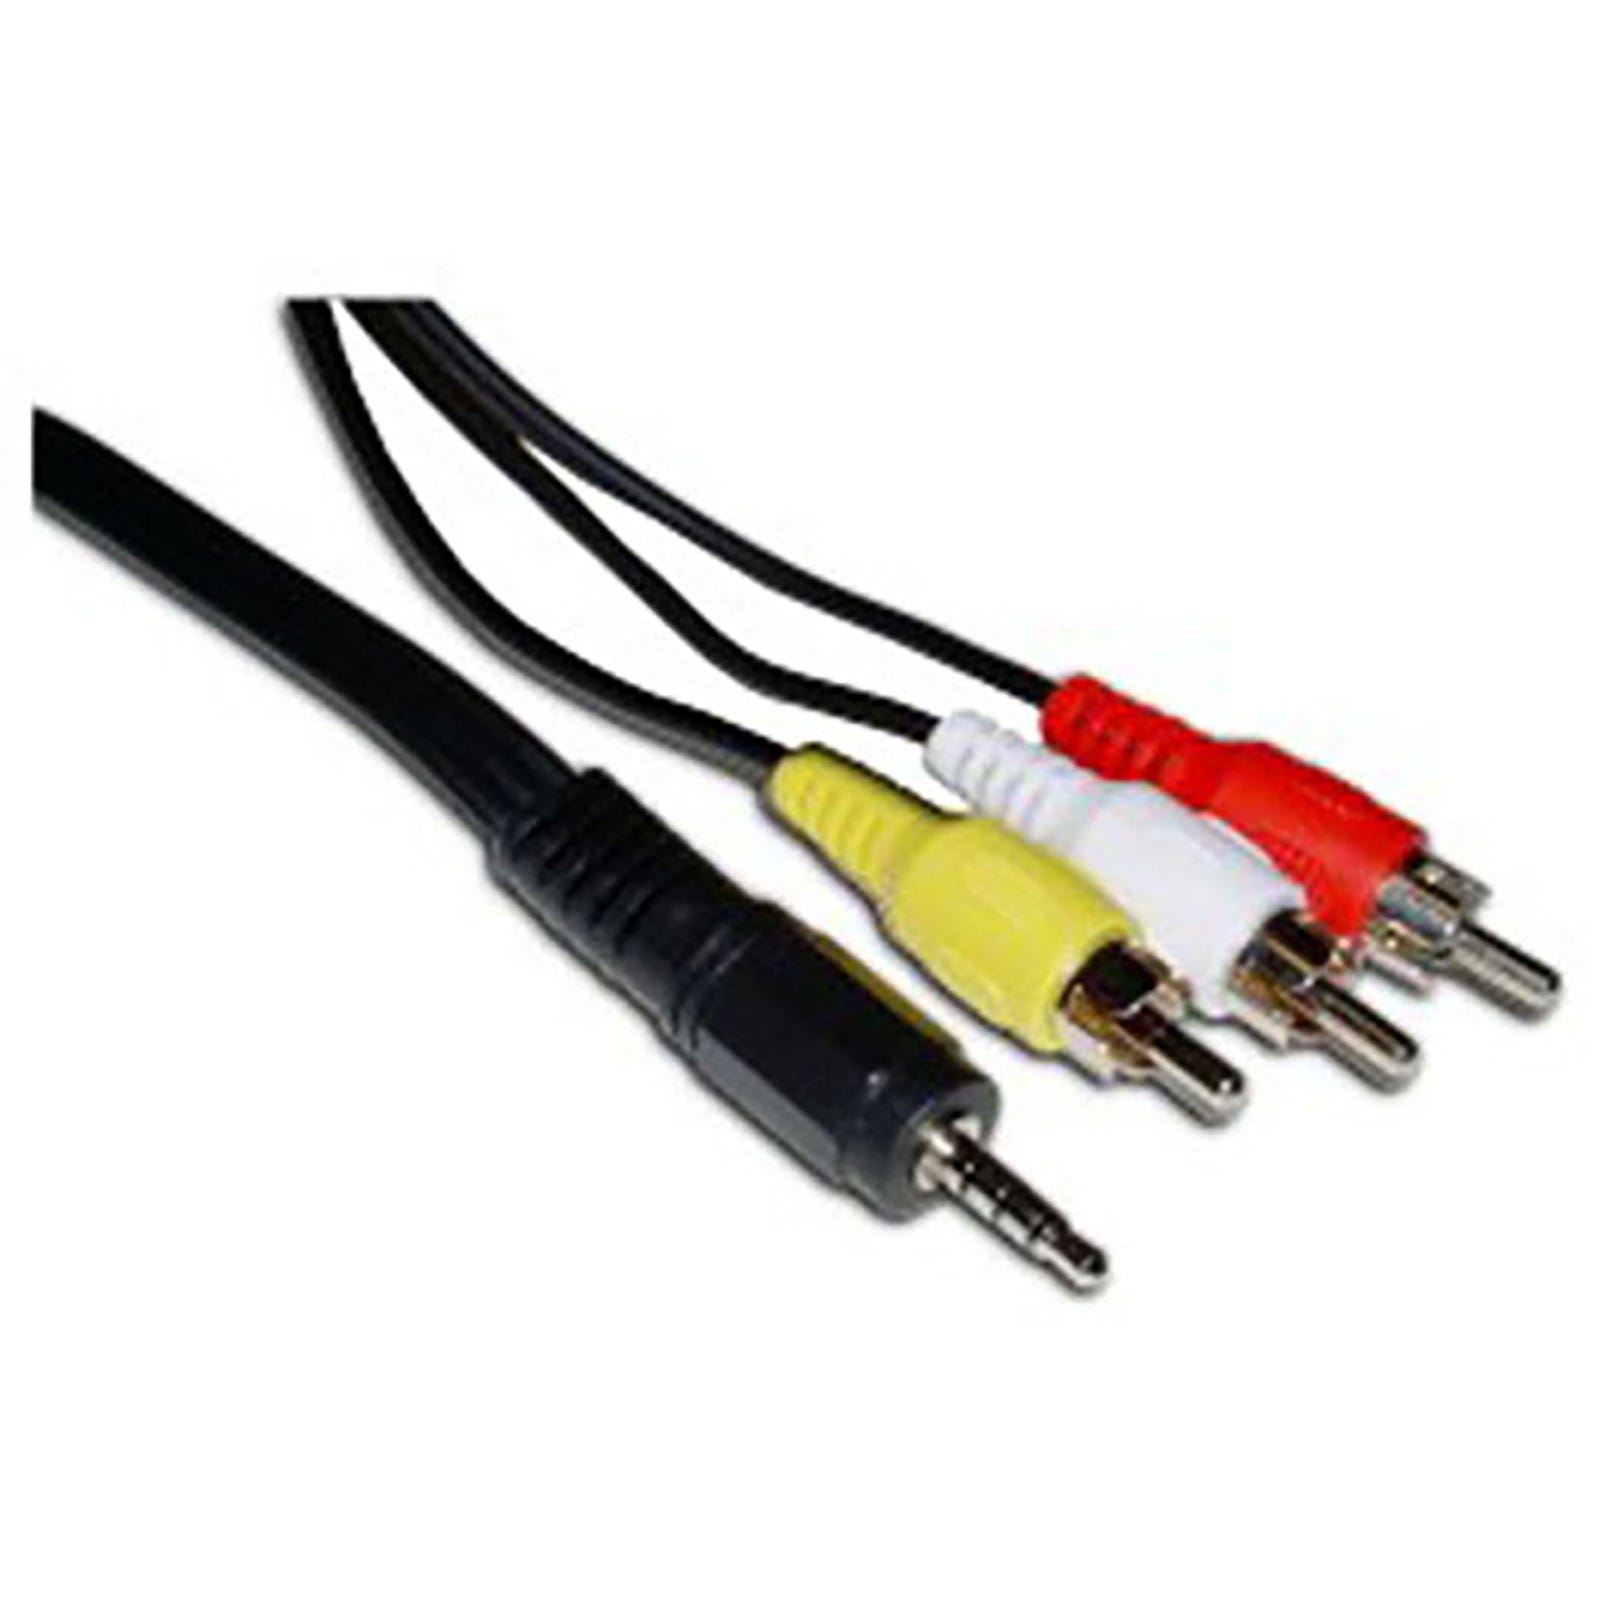 Cable de 3m para audio y vídeo 3 x RCA a Minijack macho